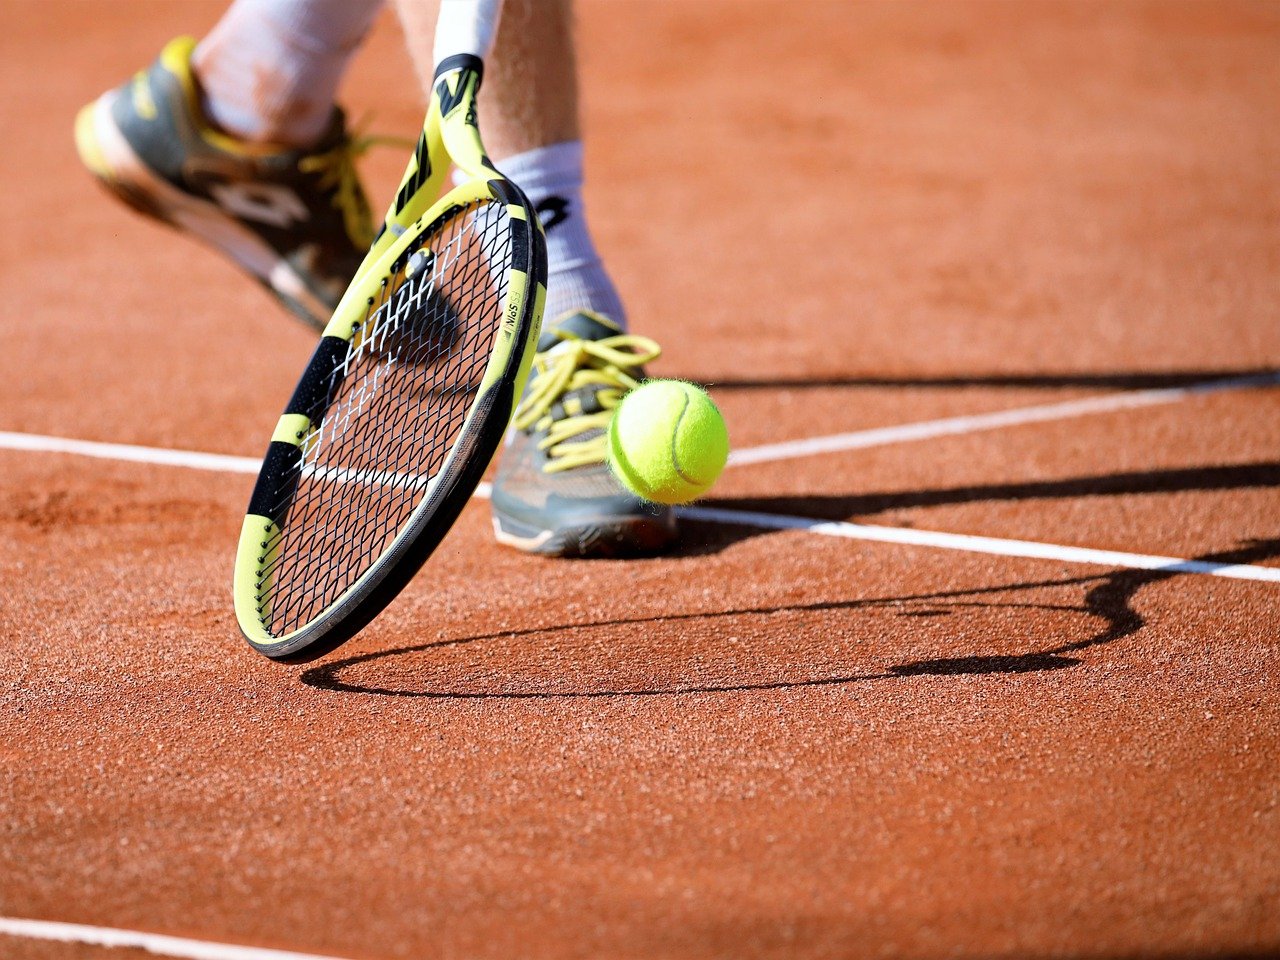 Προπονητής τένις: Το εξοργιστικό αίτημα στον εισαγγελέα - «Αν είμαι παιδόφιλος, θέλω να θεραπευτώ»